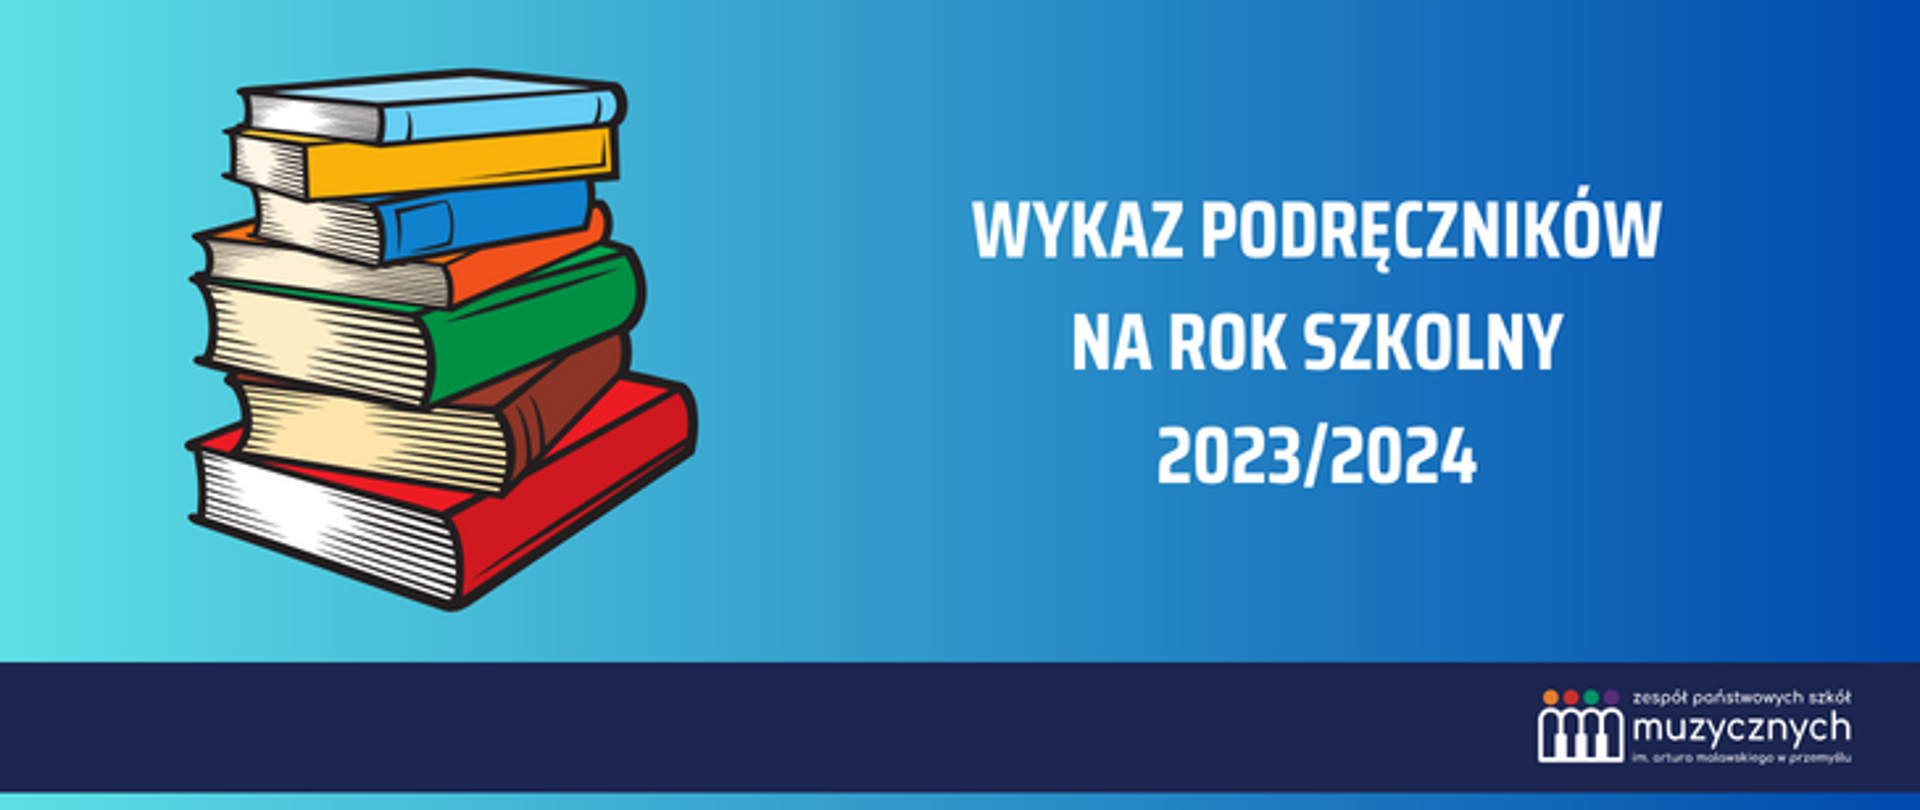 na niebieskim tle grafika książek oraz napis wykaz podręczników na rok szkolny 2023/2024, pod spodem na granatowym pasku logo szkoły